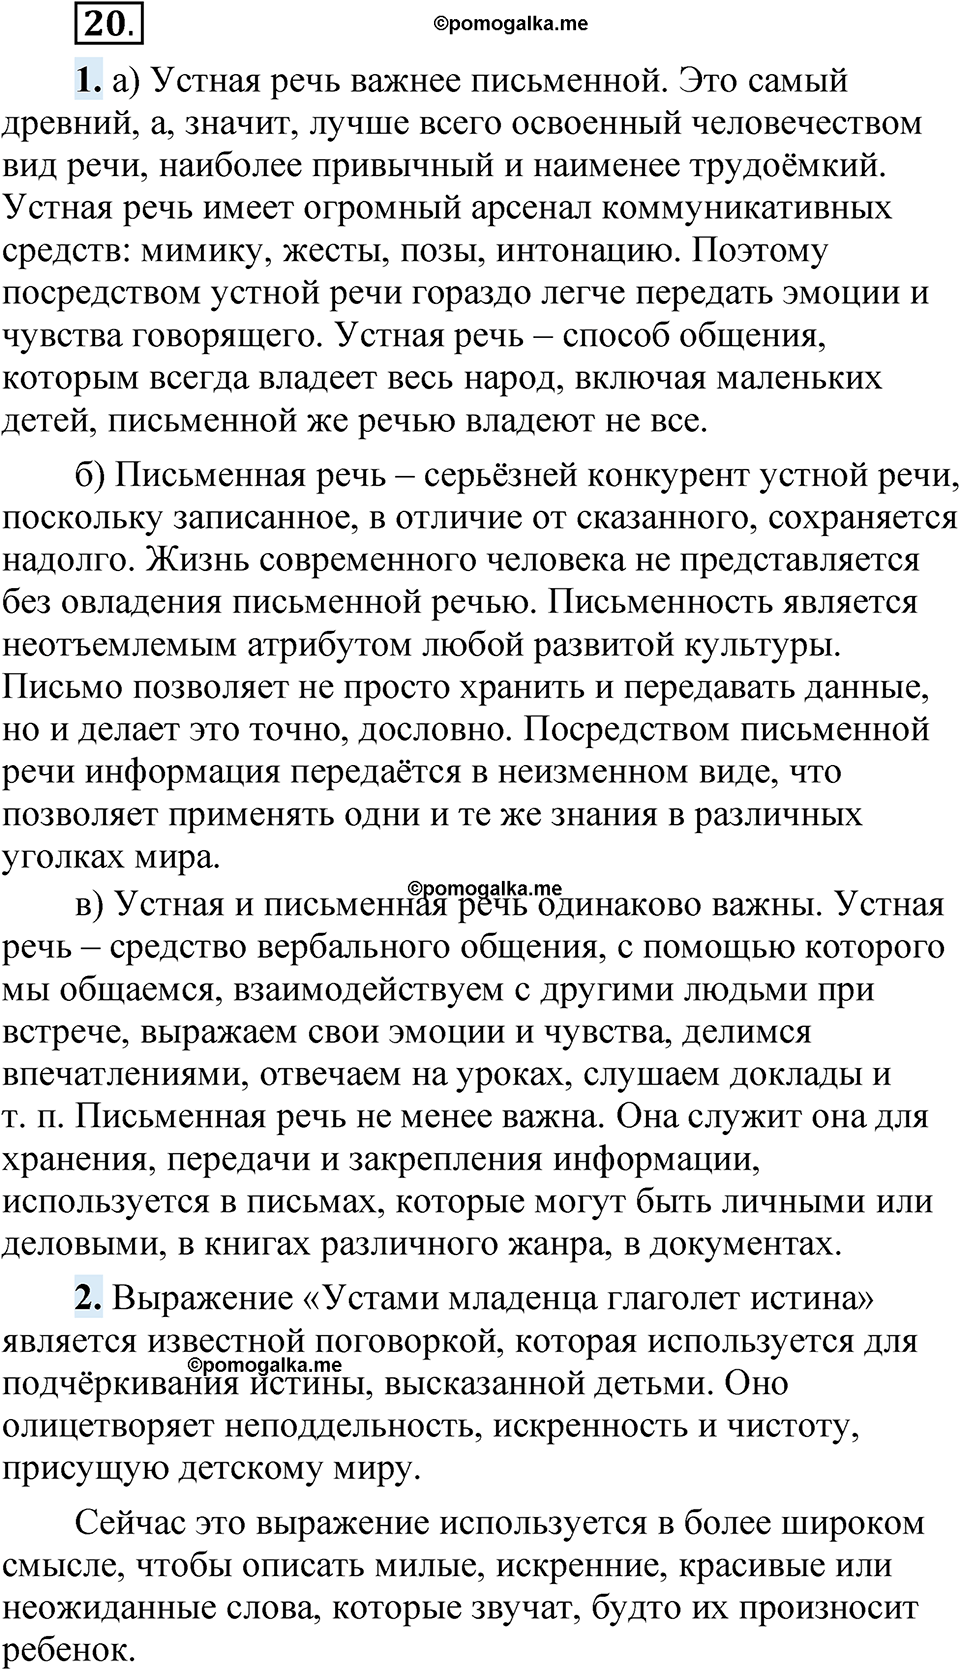 страница 19 упражнение 20 русский язык 5 класс Быстрова, Кибирева 1 часть 2021 год